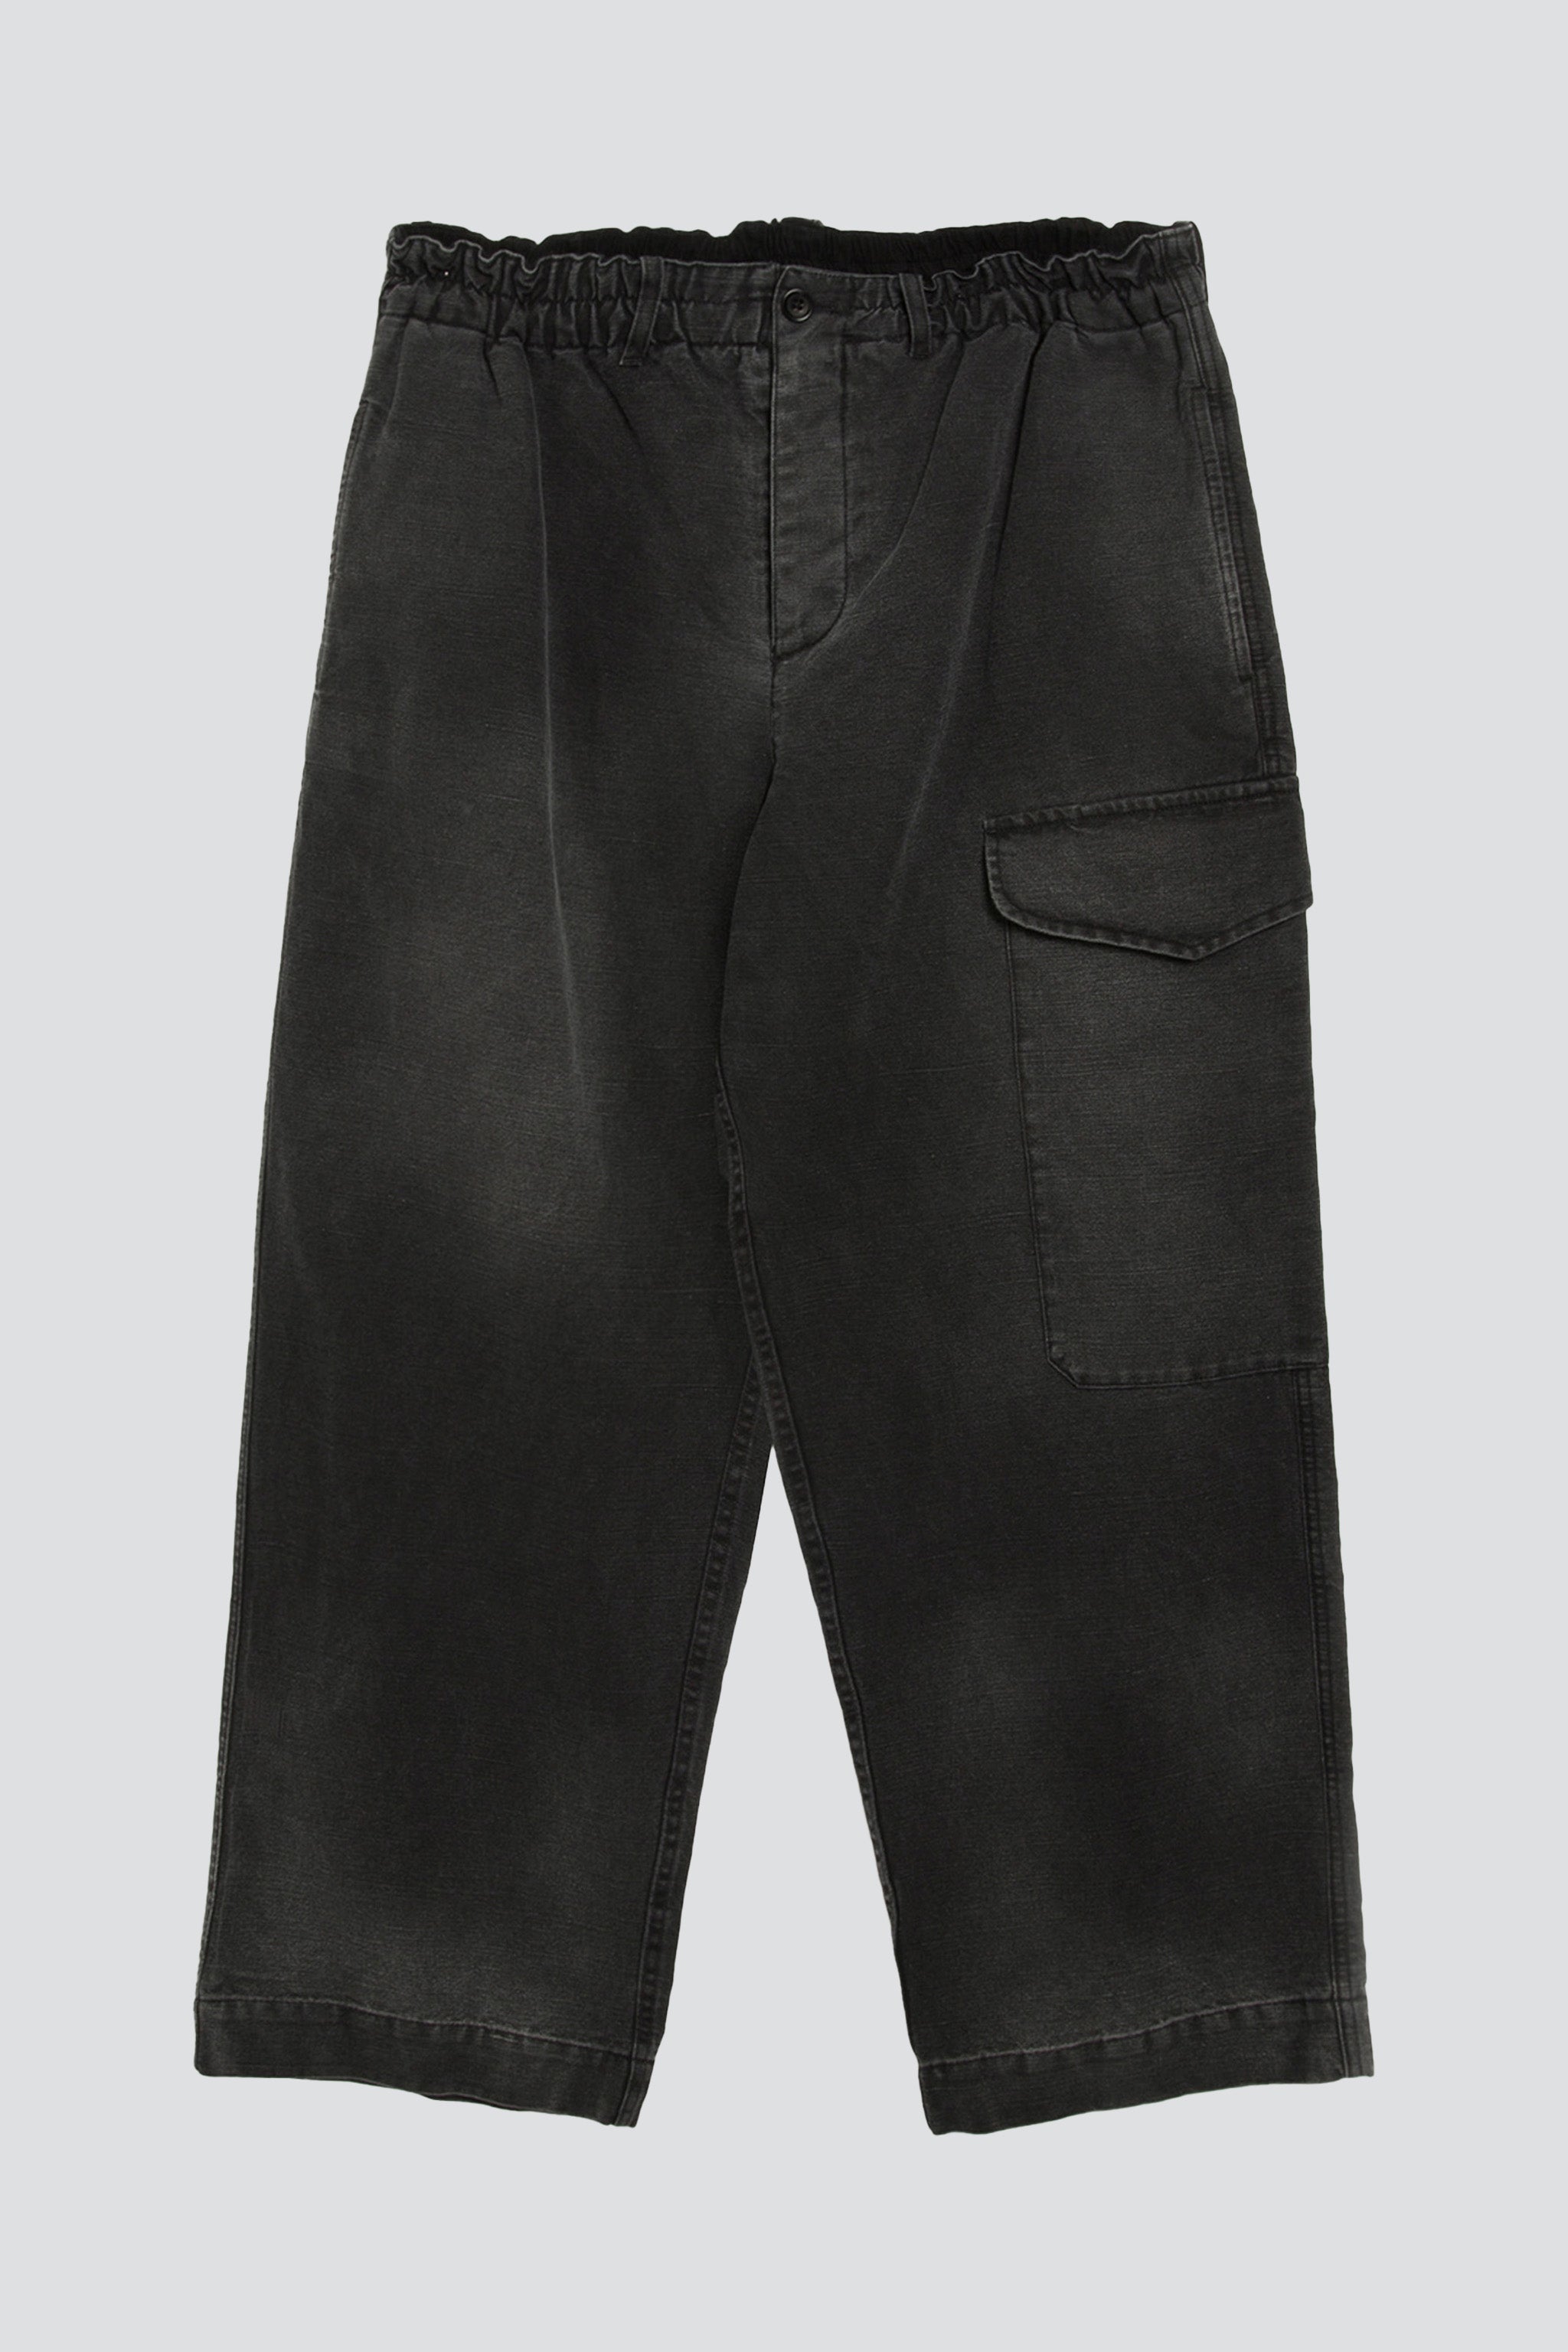 Black Military Trouser